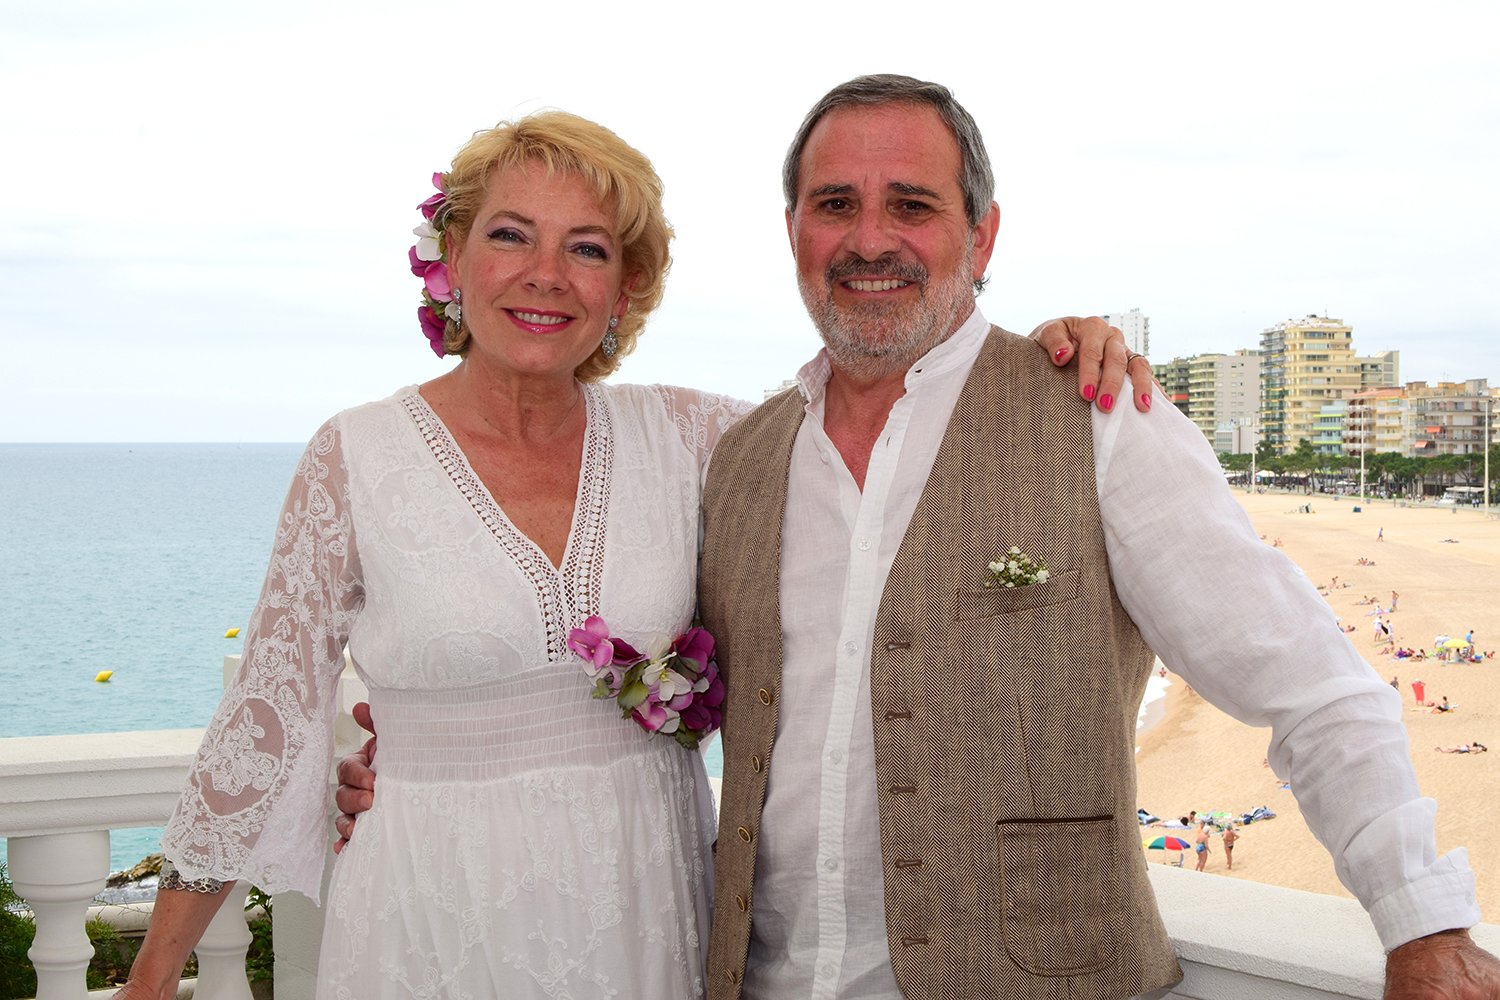 Reportaje fotográfico de la boda realizada en el hotel Costa Brava de Platja d’Aro